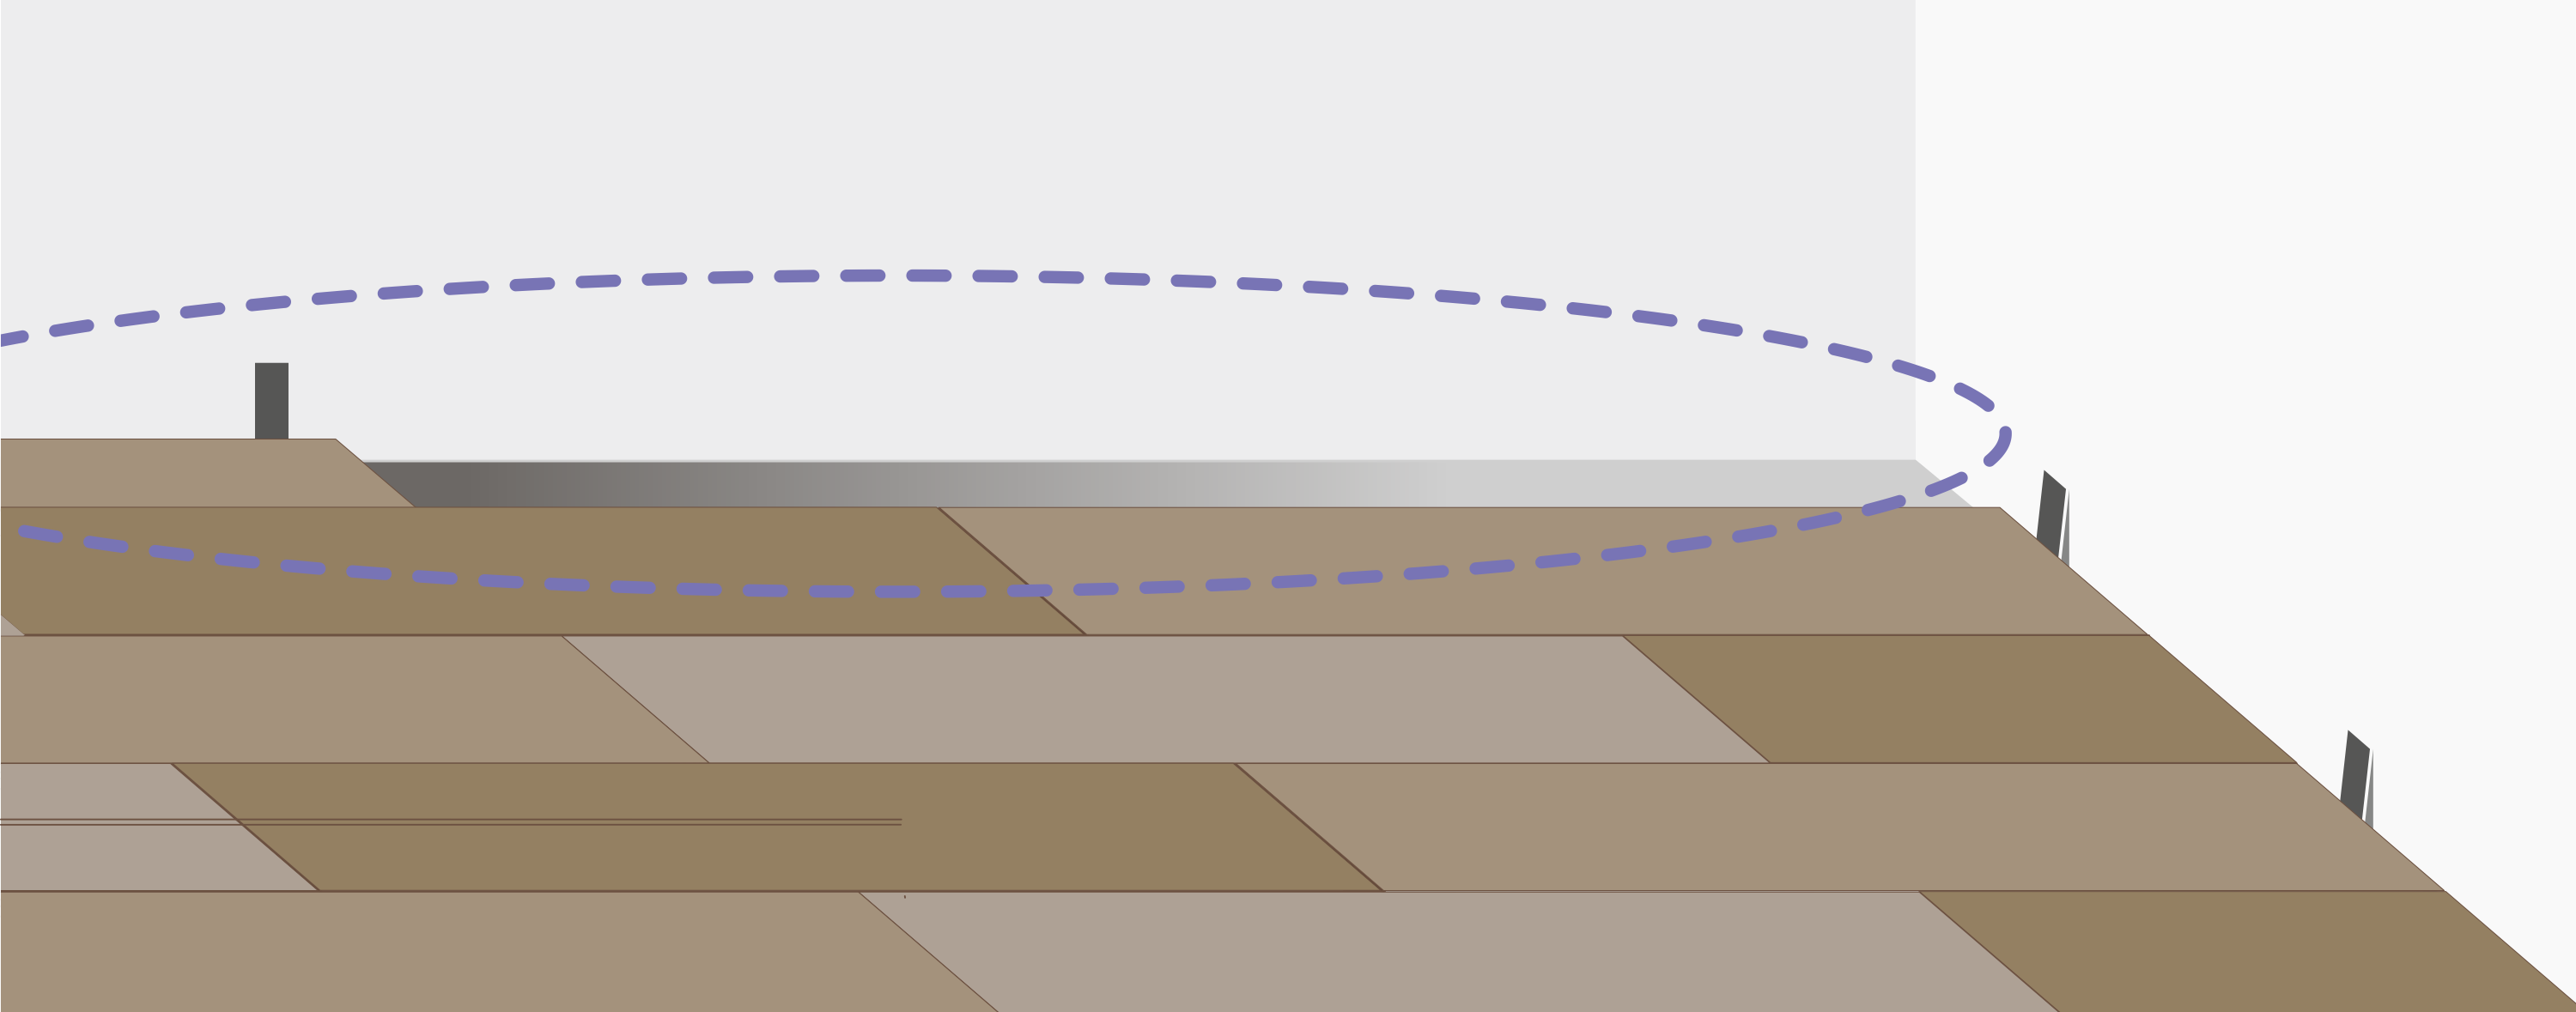 Продолжайте укладку аналогично до противоположной стены. Если планка последнего ряда не подходит по ширине, подрежьте ее, учитывая расширительный зазор.